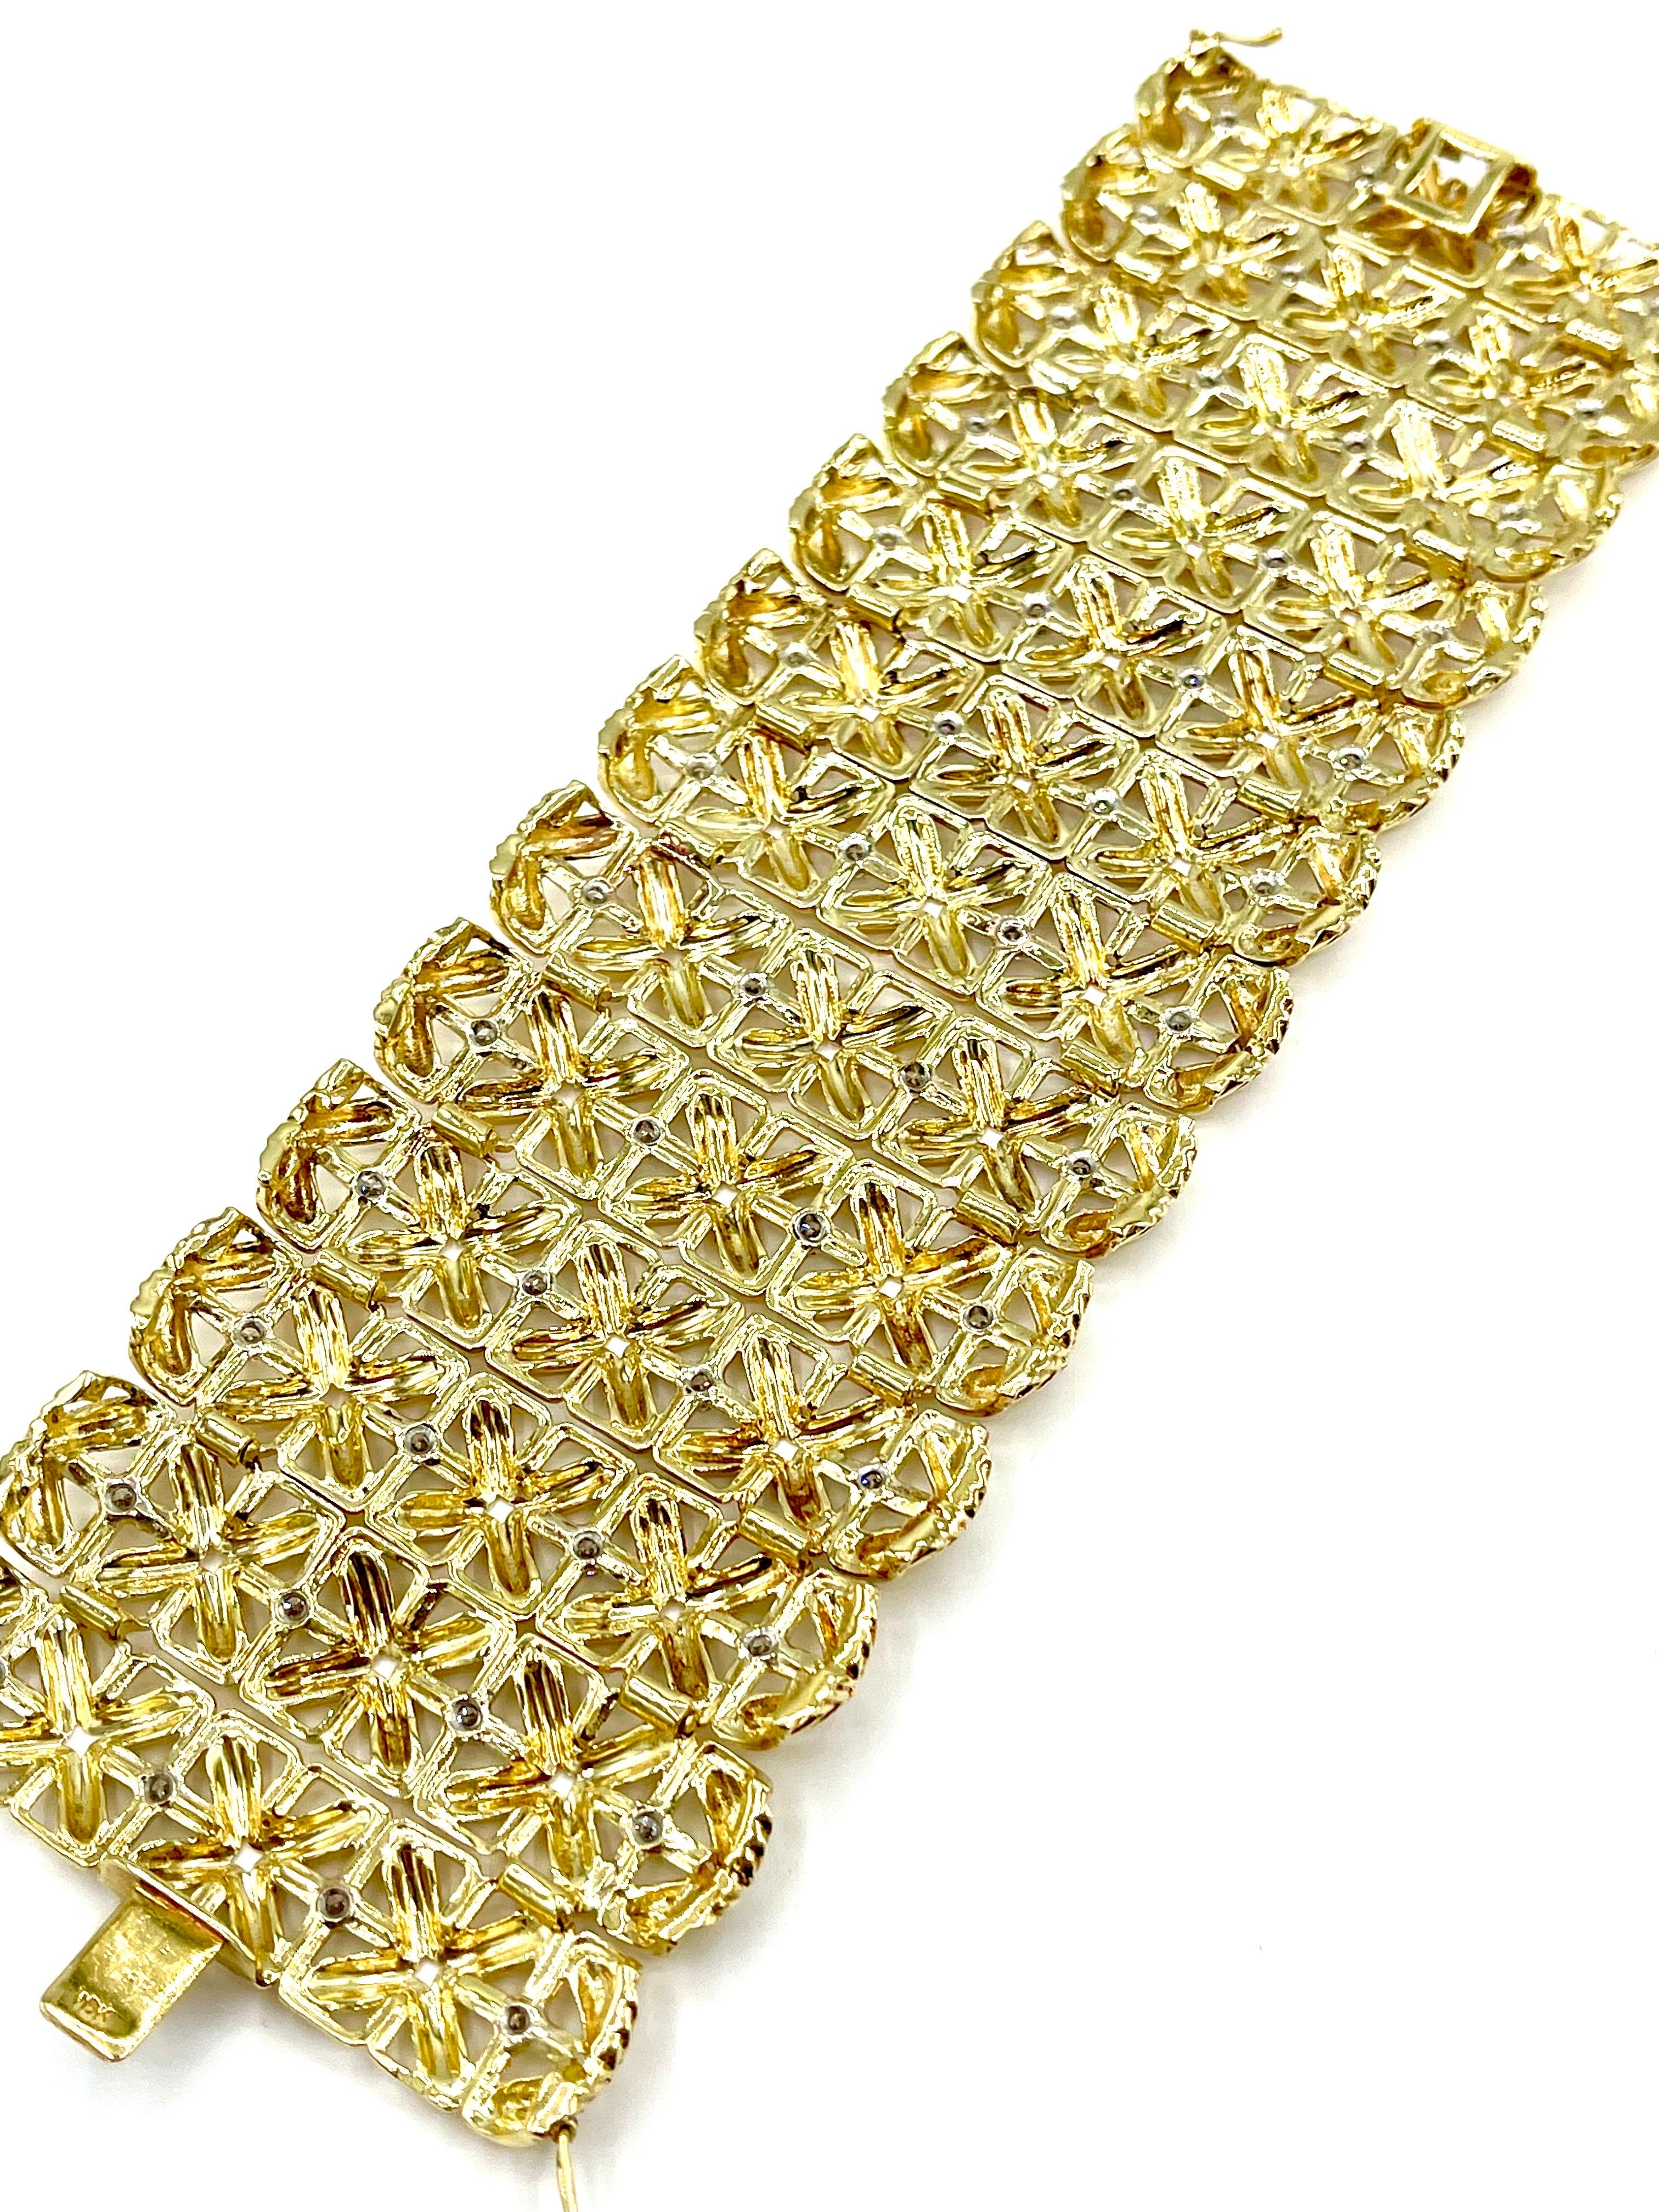 Eine von einer Art Cartier breite Passform Diamant-Armband.  Das Armband besteht aus 52 runden Brillanten, die in 18 Karat Gelbgold gefasst sind und zusammen ein Gesamtgewicht von 3,92 Karat ergeben.  Die Diamanten sind mit der Farbe F und der